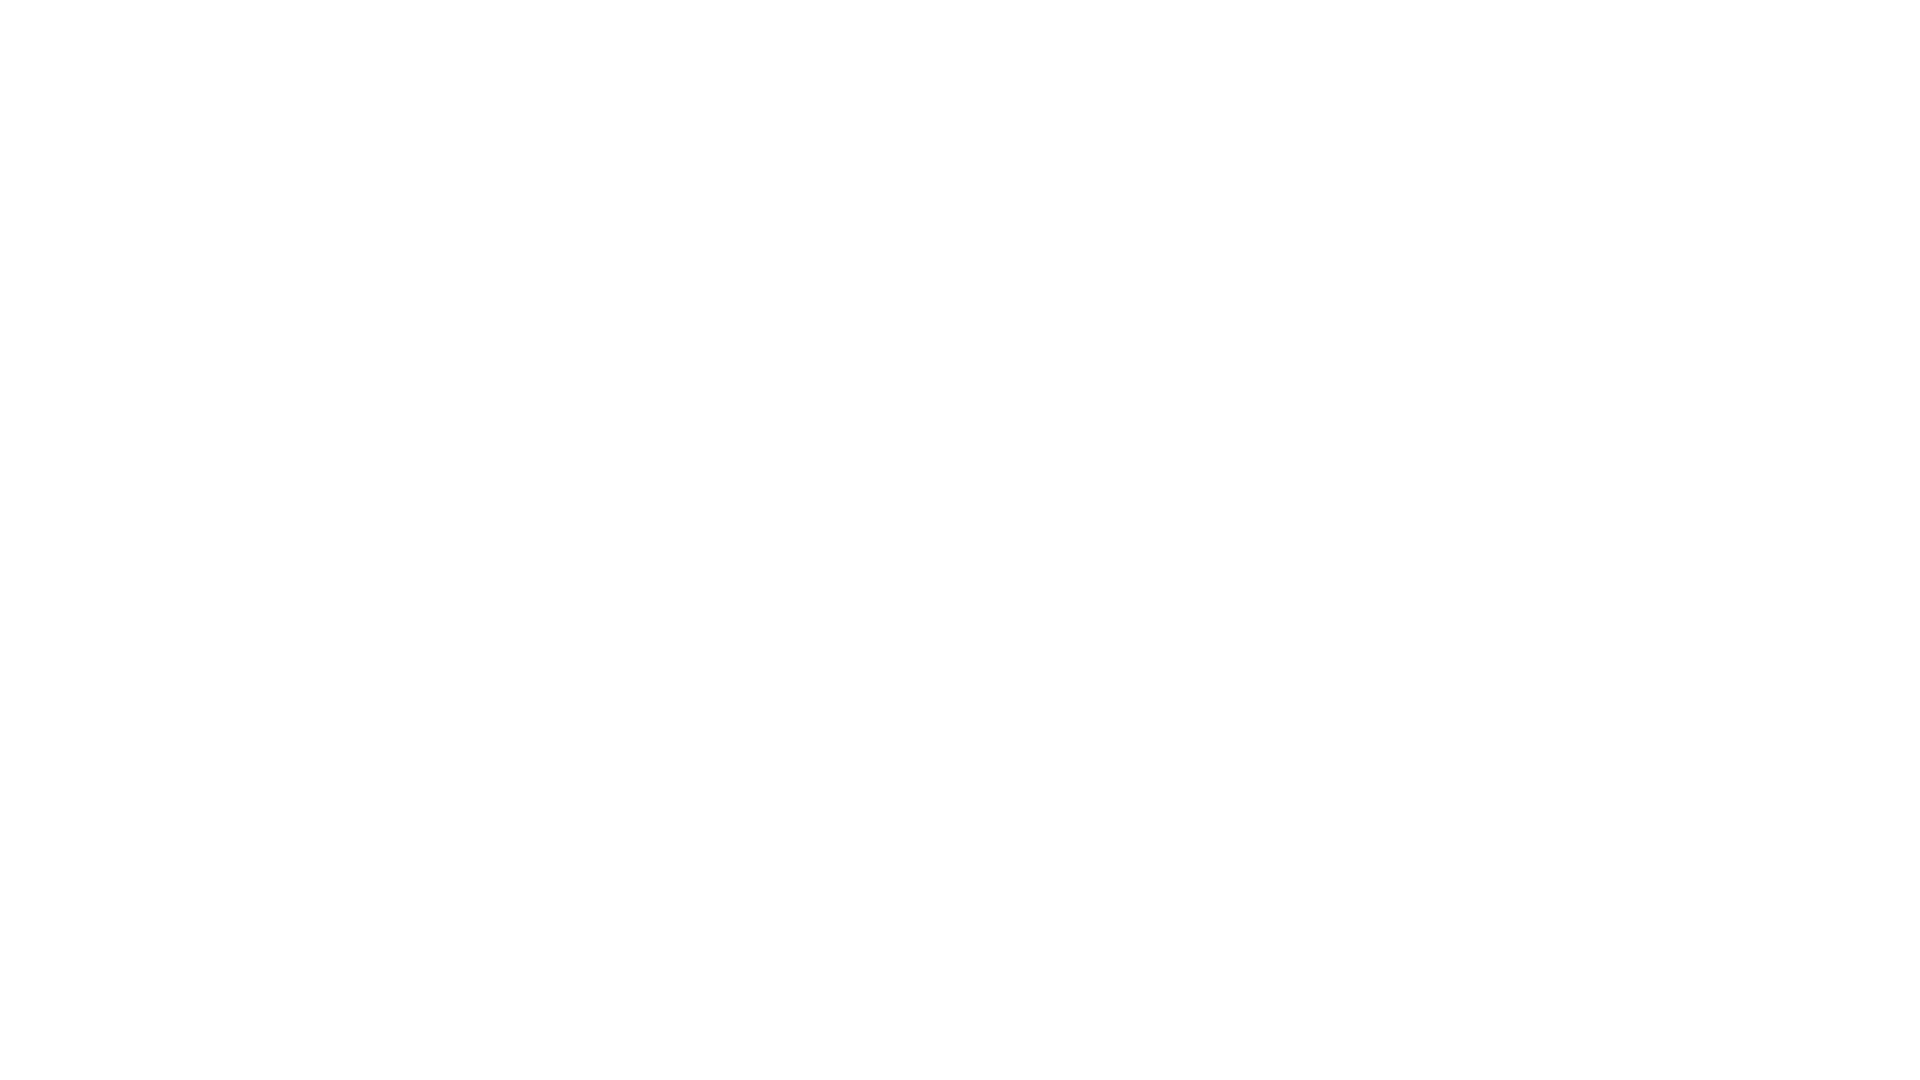 Jaxxon logo